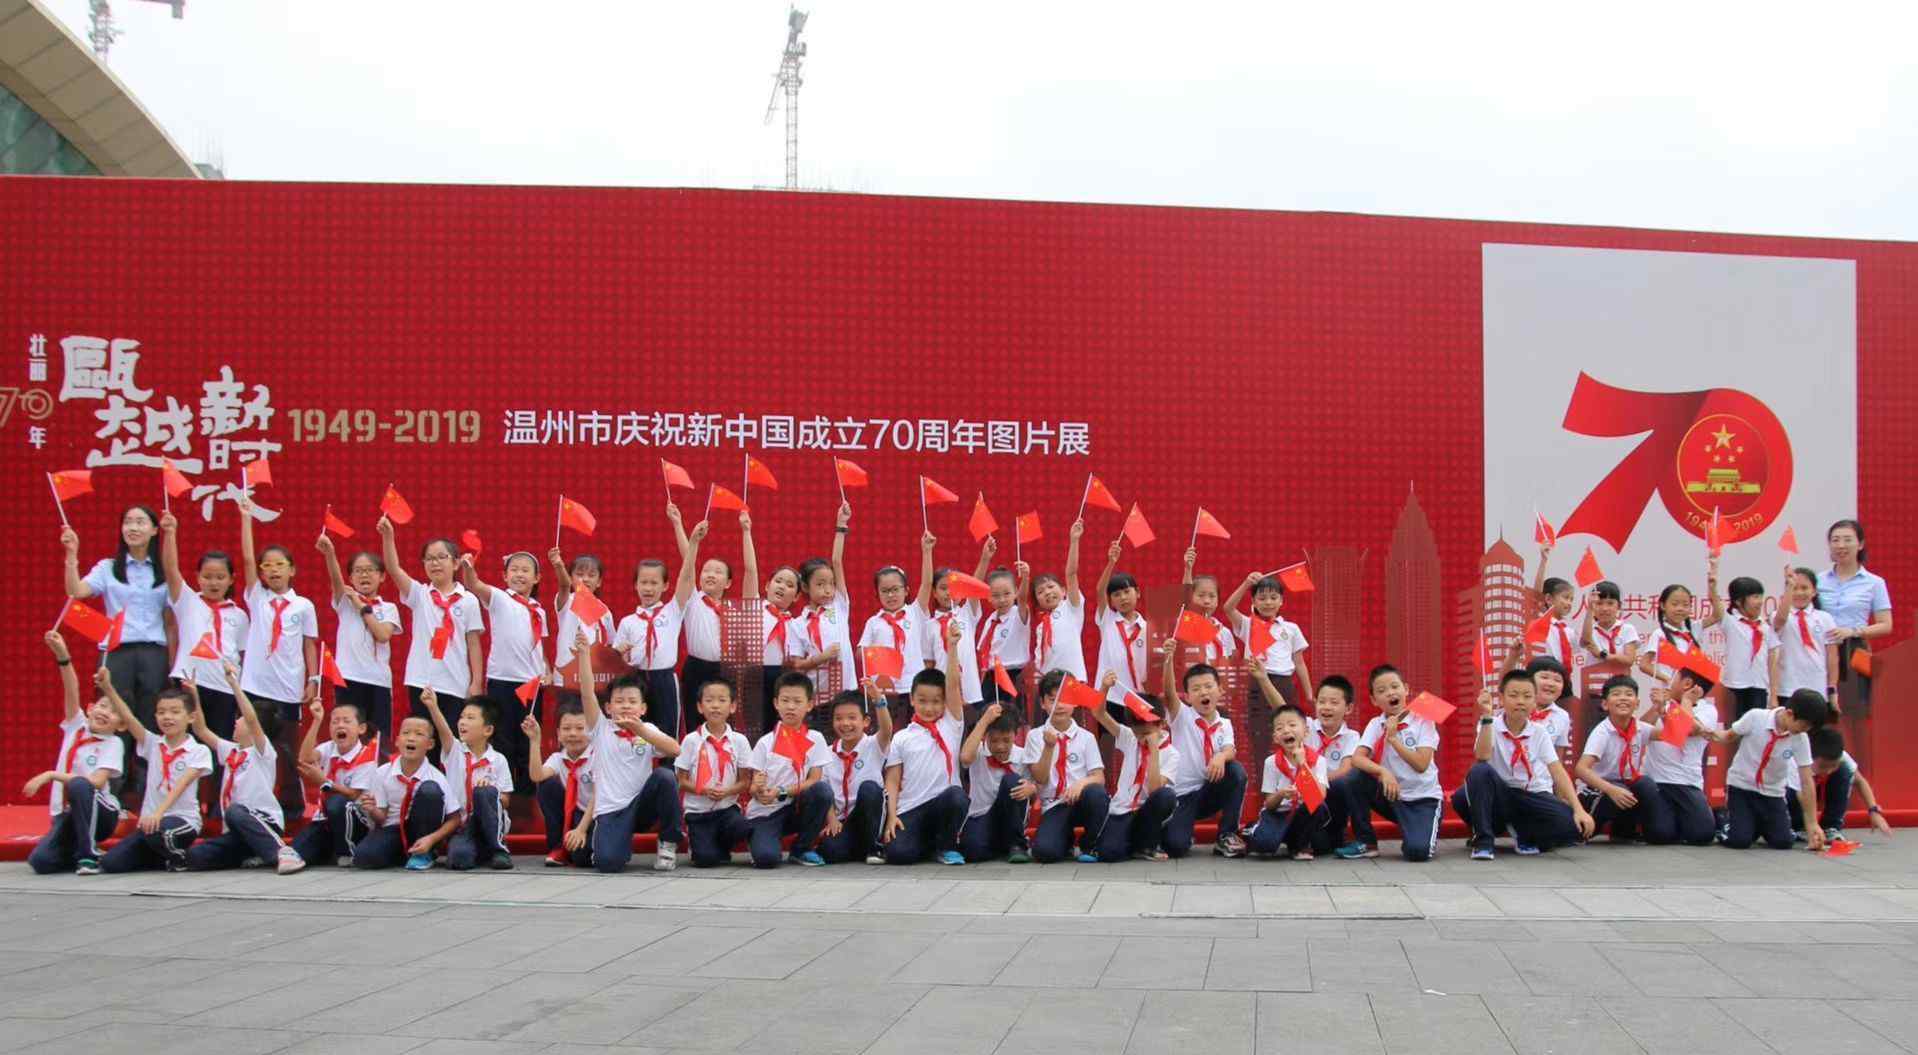 庆祝新中国成立70周年图片 温州市庆祝新中国成立70周年图片展成假期热门打卡地